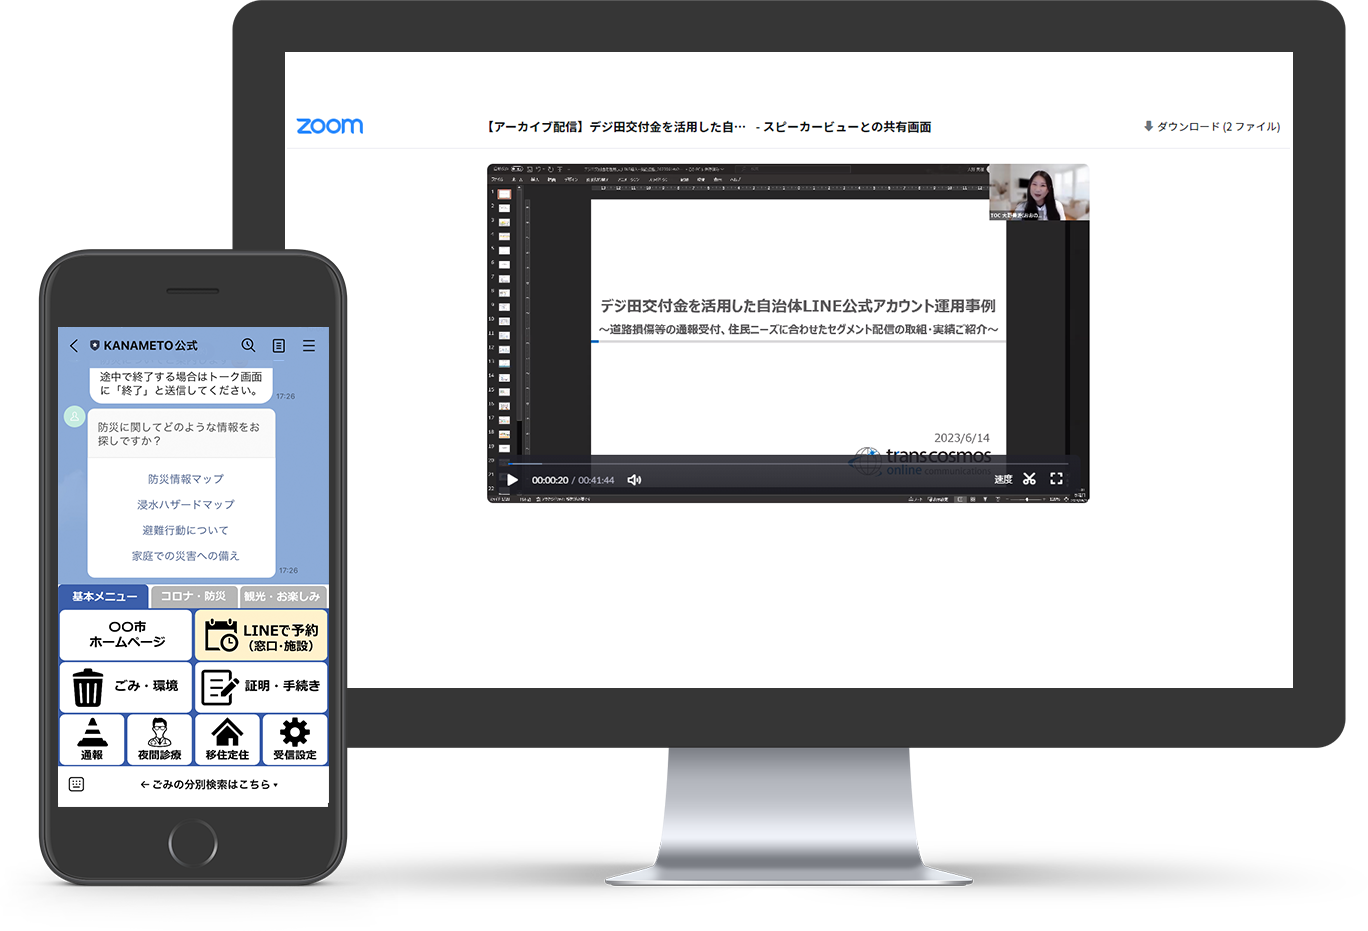 LINE・KANAMETO活用セミナーのアーカイブ視聴イメージ